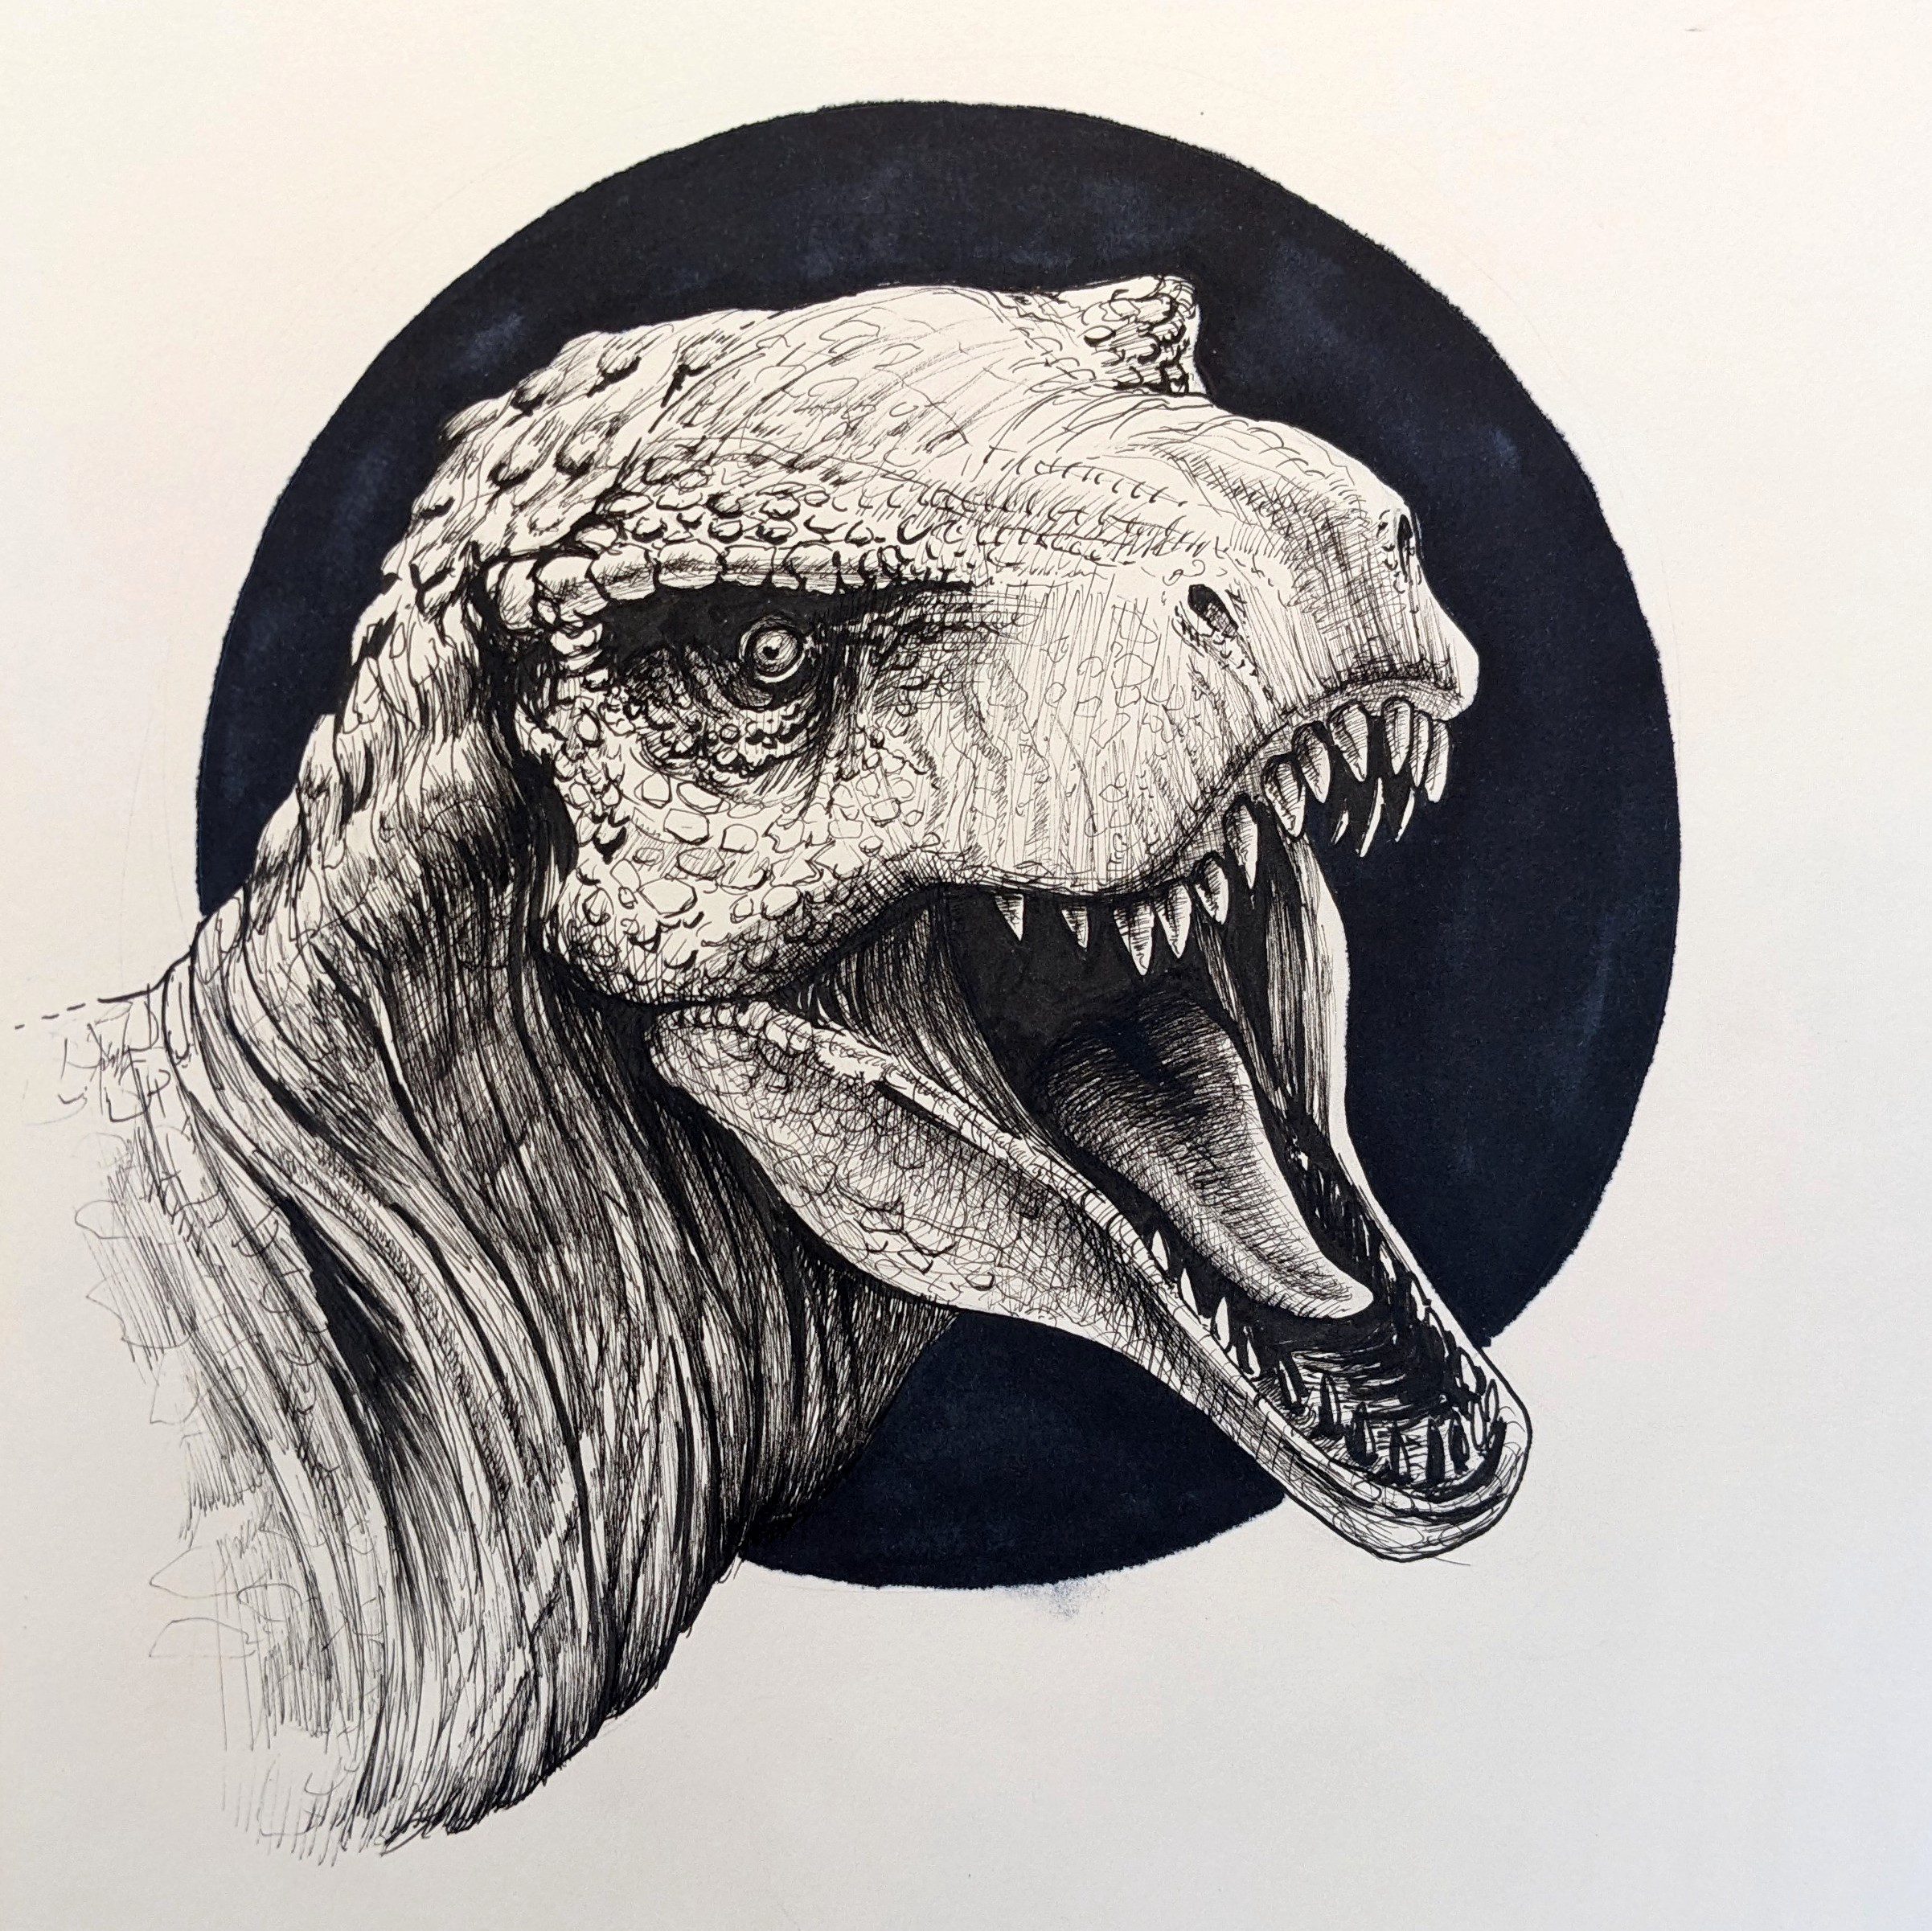 Velociraptor Pencil Sketch by Feral-Kenna on DeviantArt